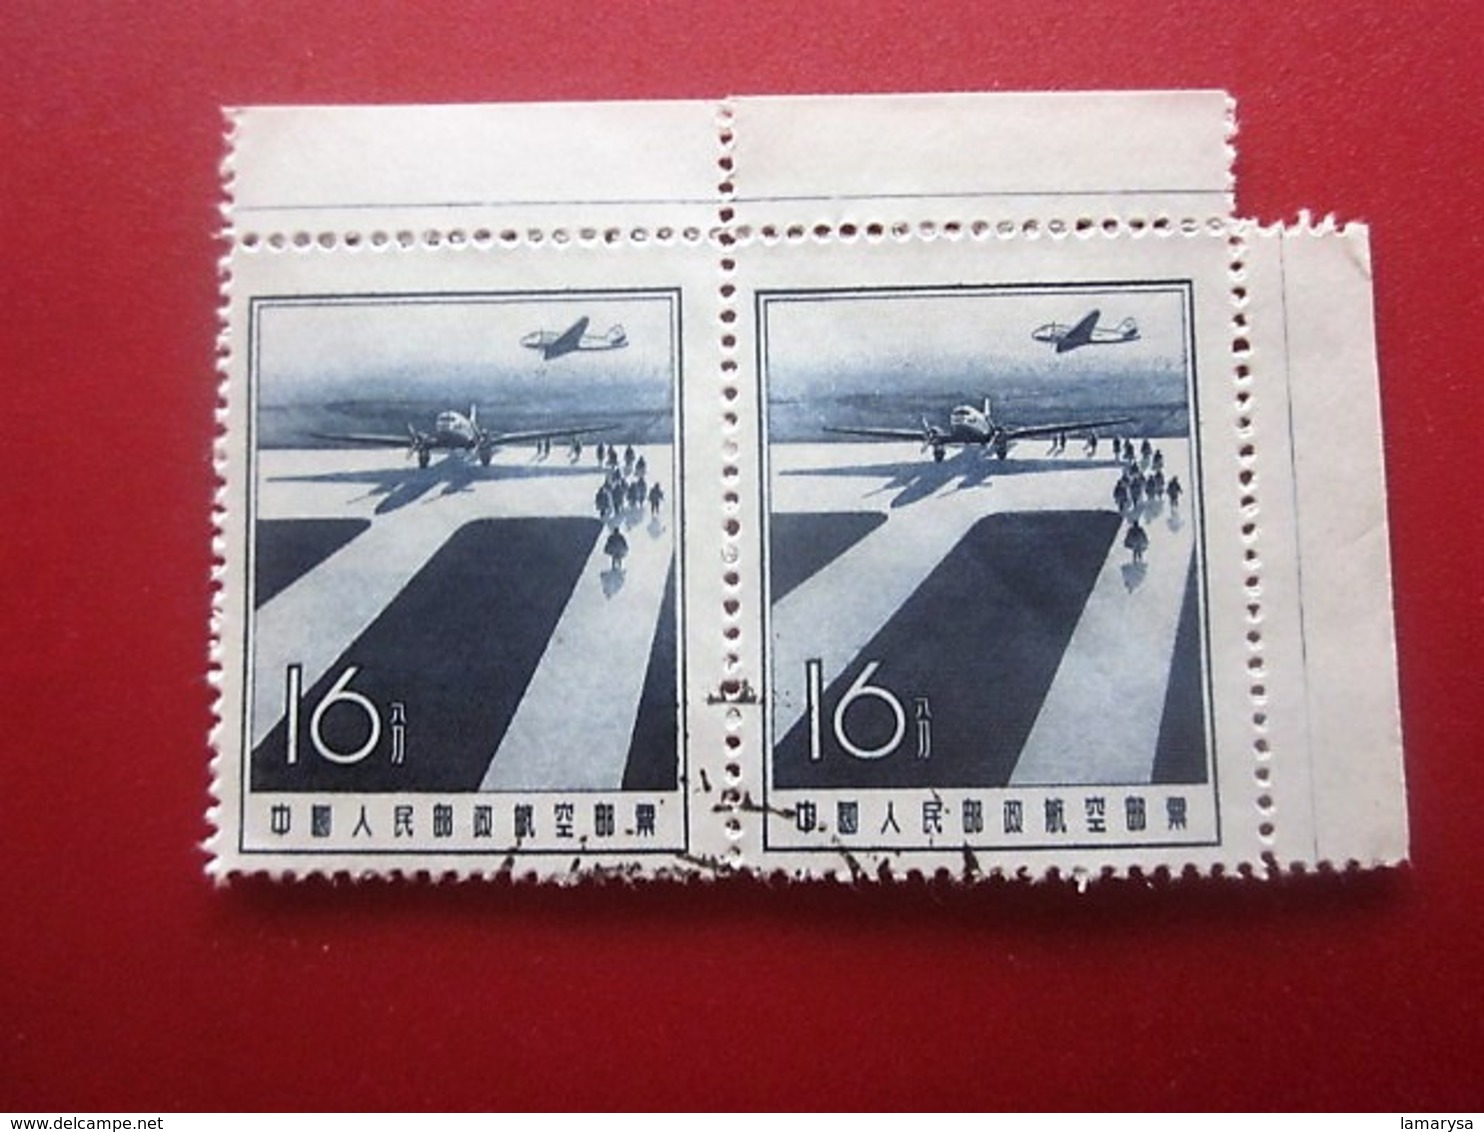 Chine Bloc 2 Timbres-Stamps-République Populaire-Poste Aérienne-Asia China-Popular Republic Airmail-亚洲中国第4区邮票热门共和国航空邮件 - Luftpost